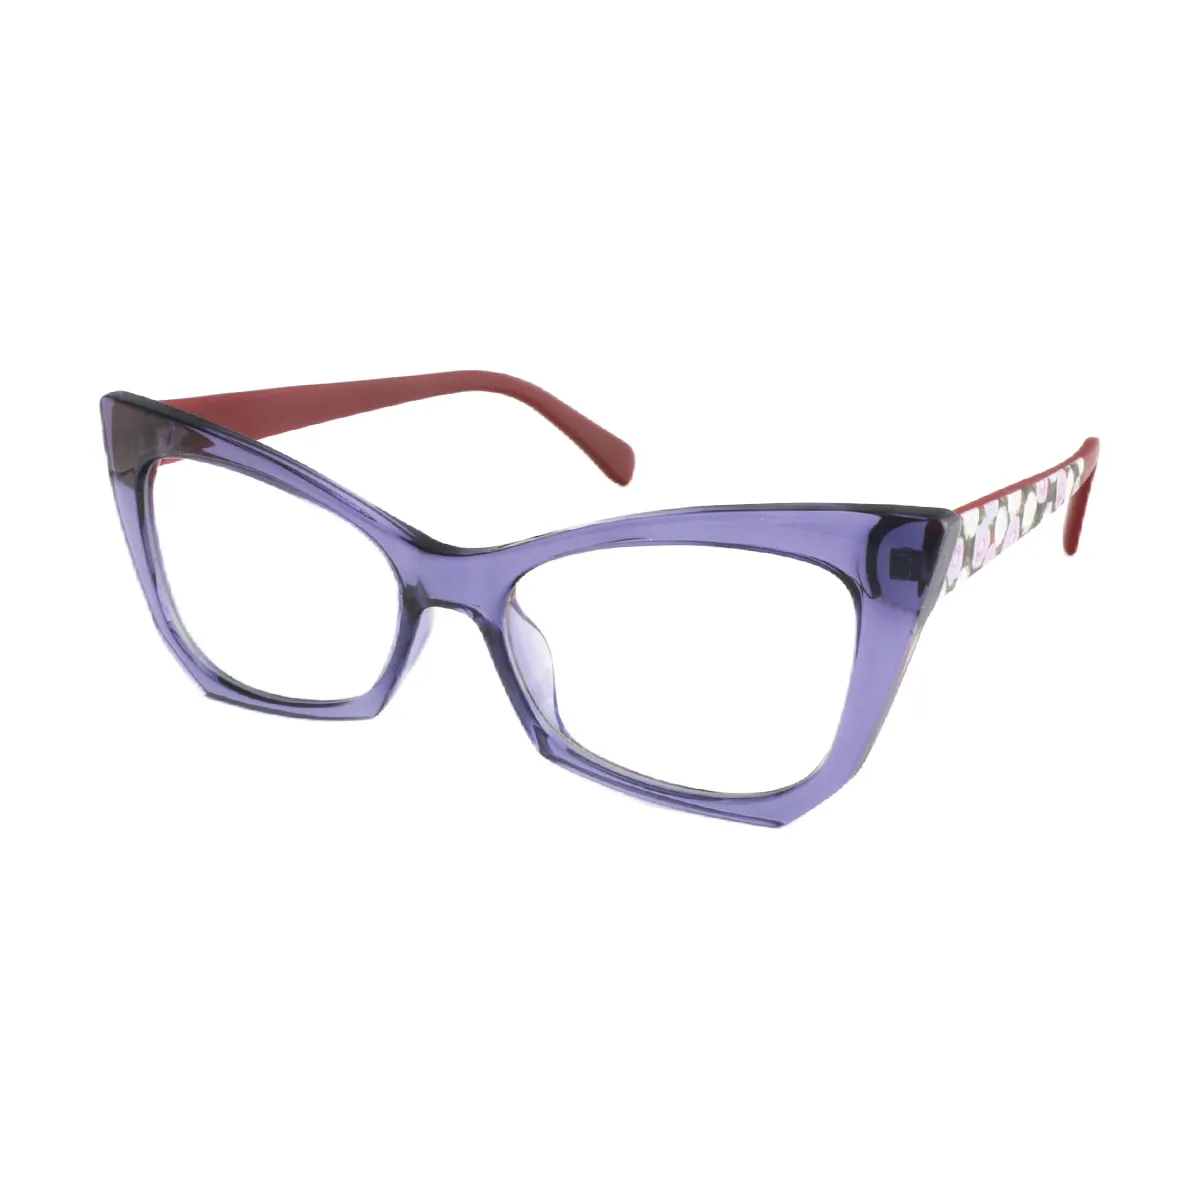 Fashion Cat-eye Black Reading Glasses for Women